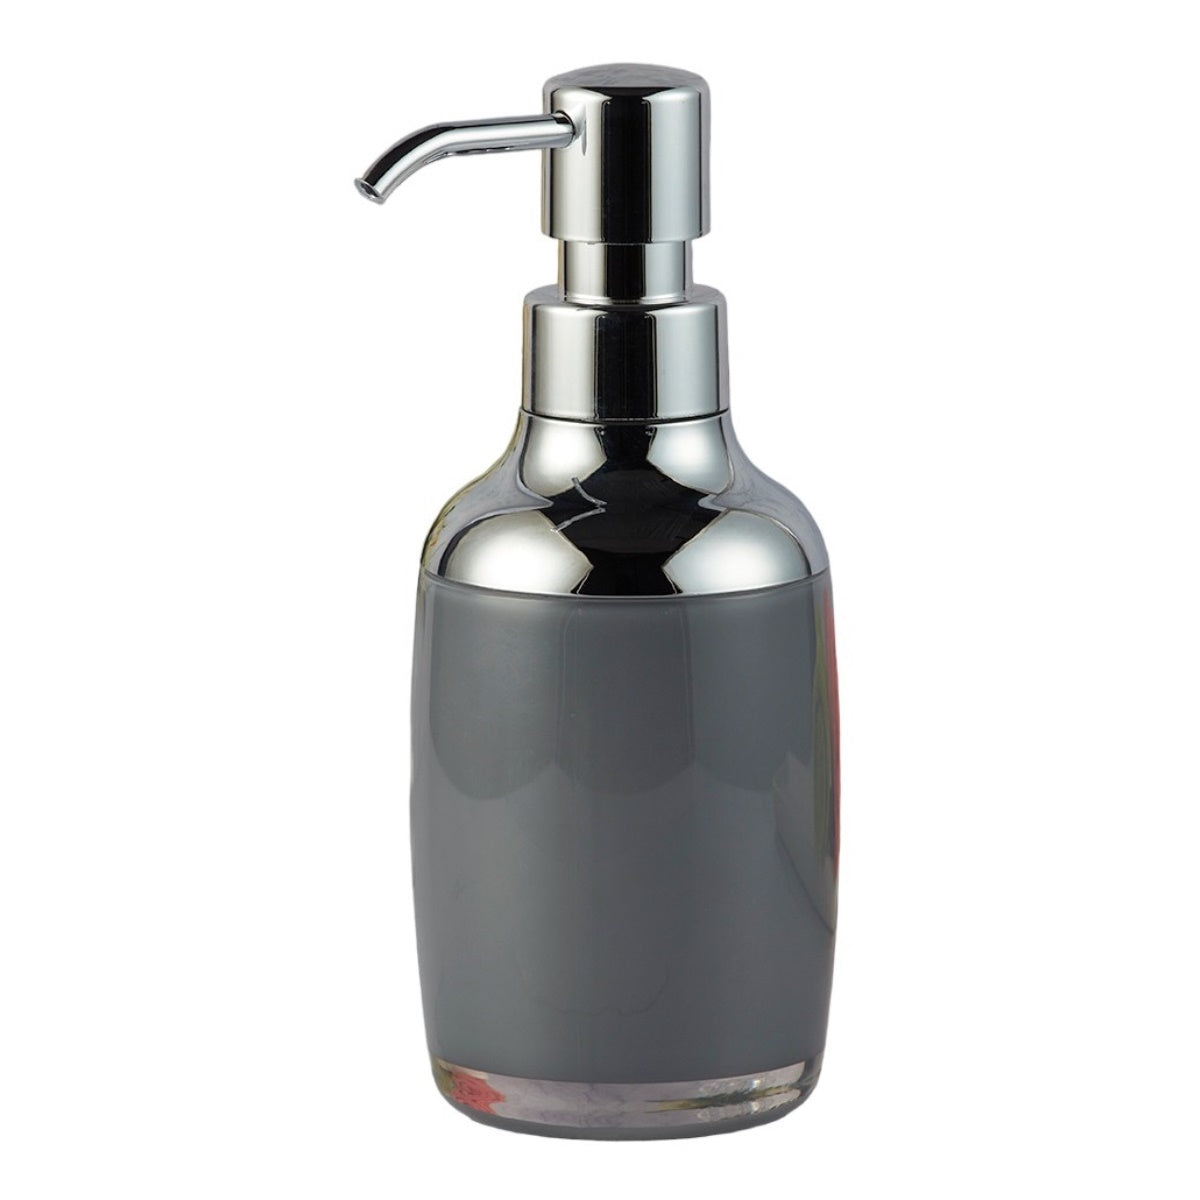 Acrylic Soap Dispenser Pump for Bathroom for Bath Gel, Lotion, Shampoo (9934)